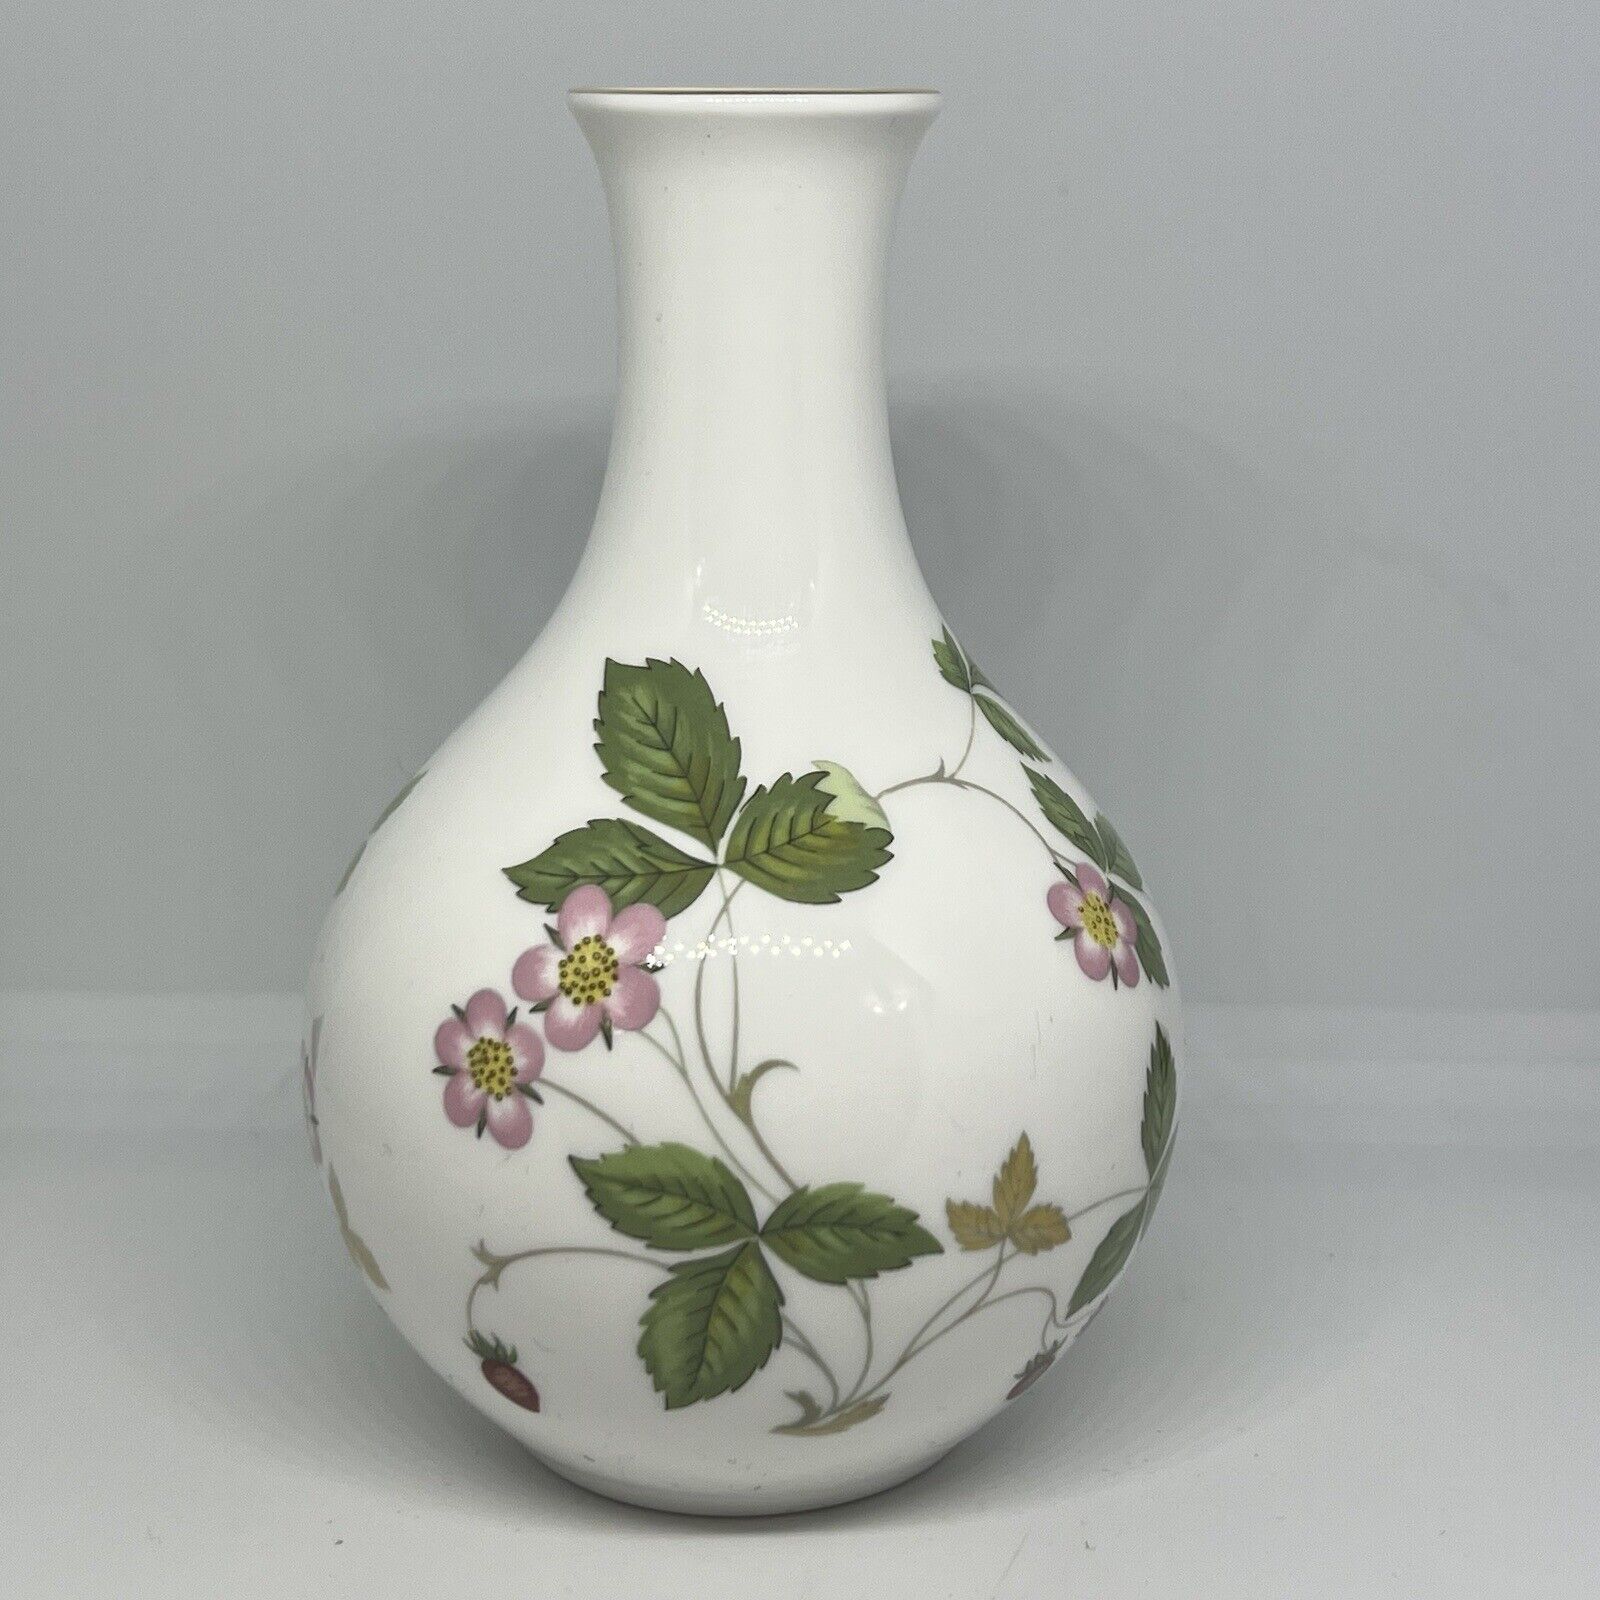 NICE Wedgwood Wild Strawberry Bone China Small Bud Vase Made in England